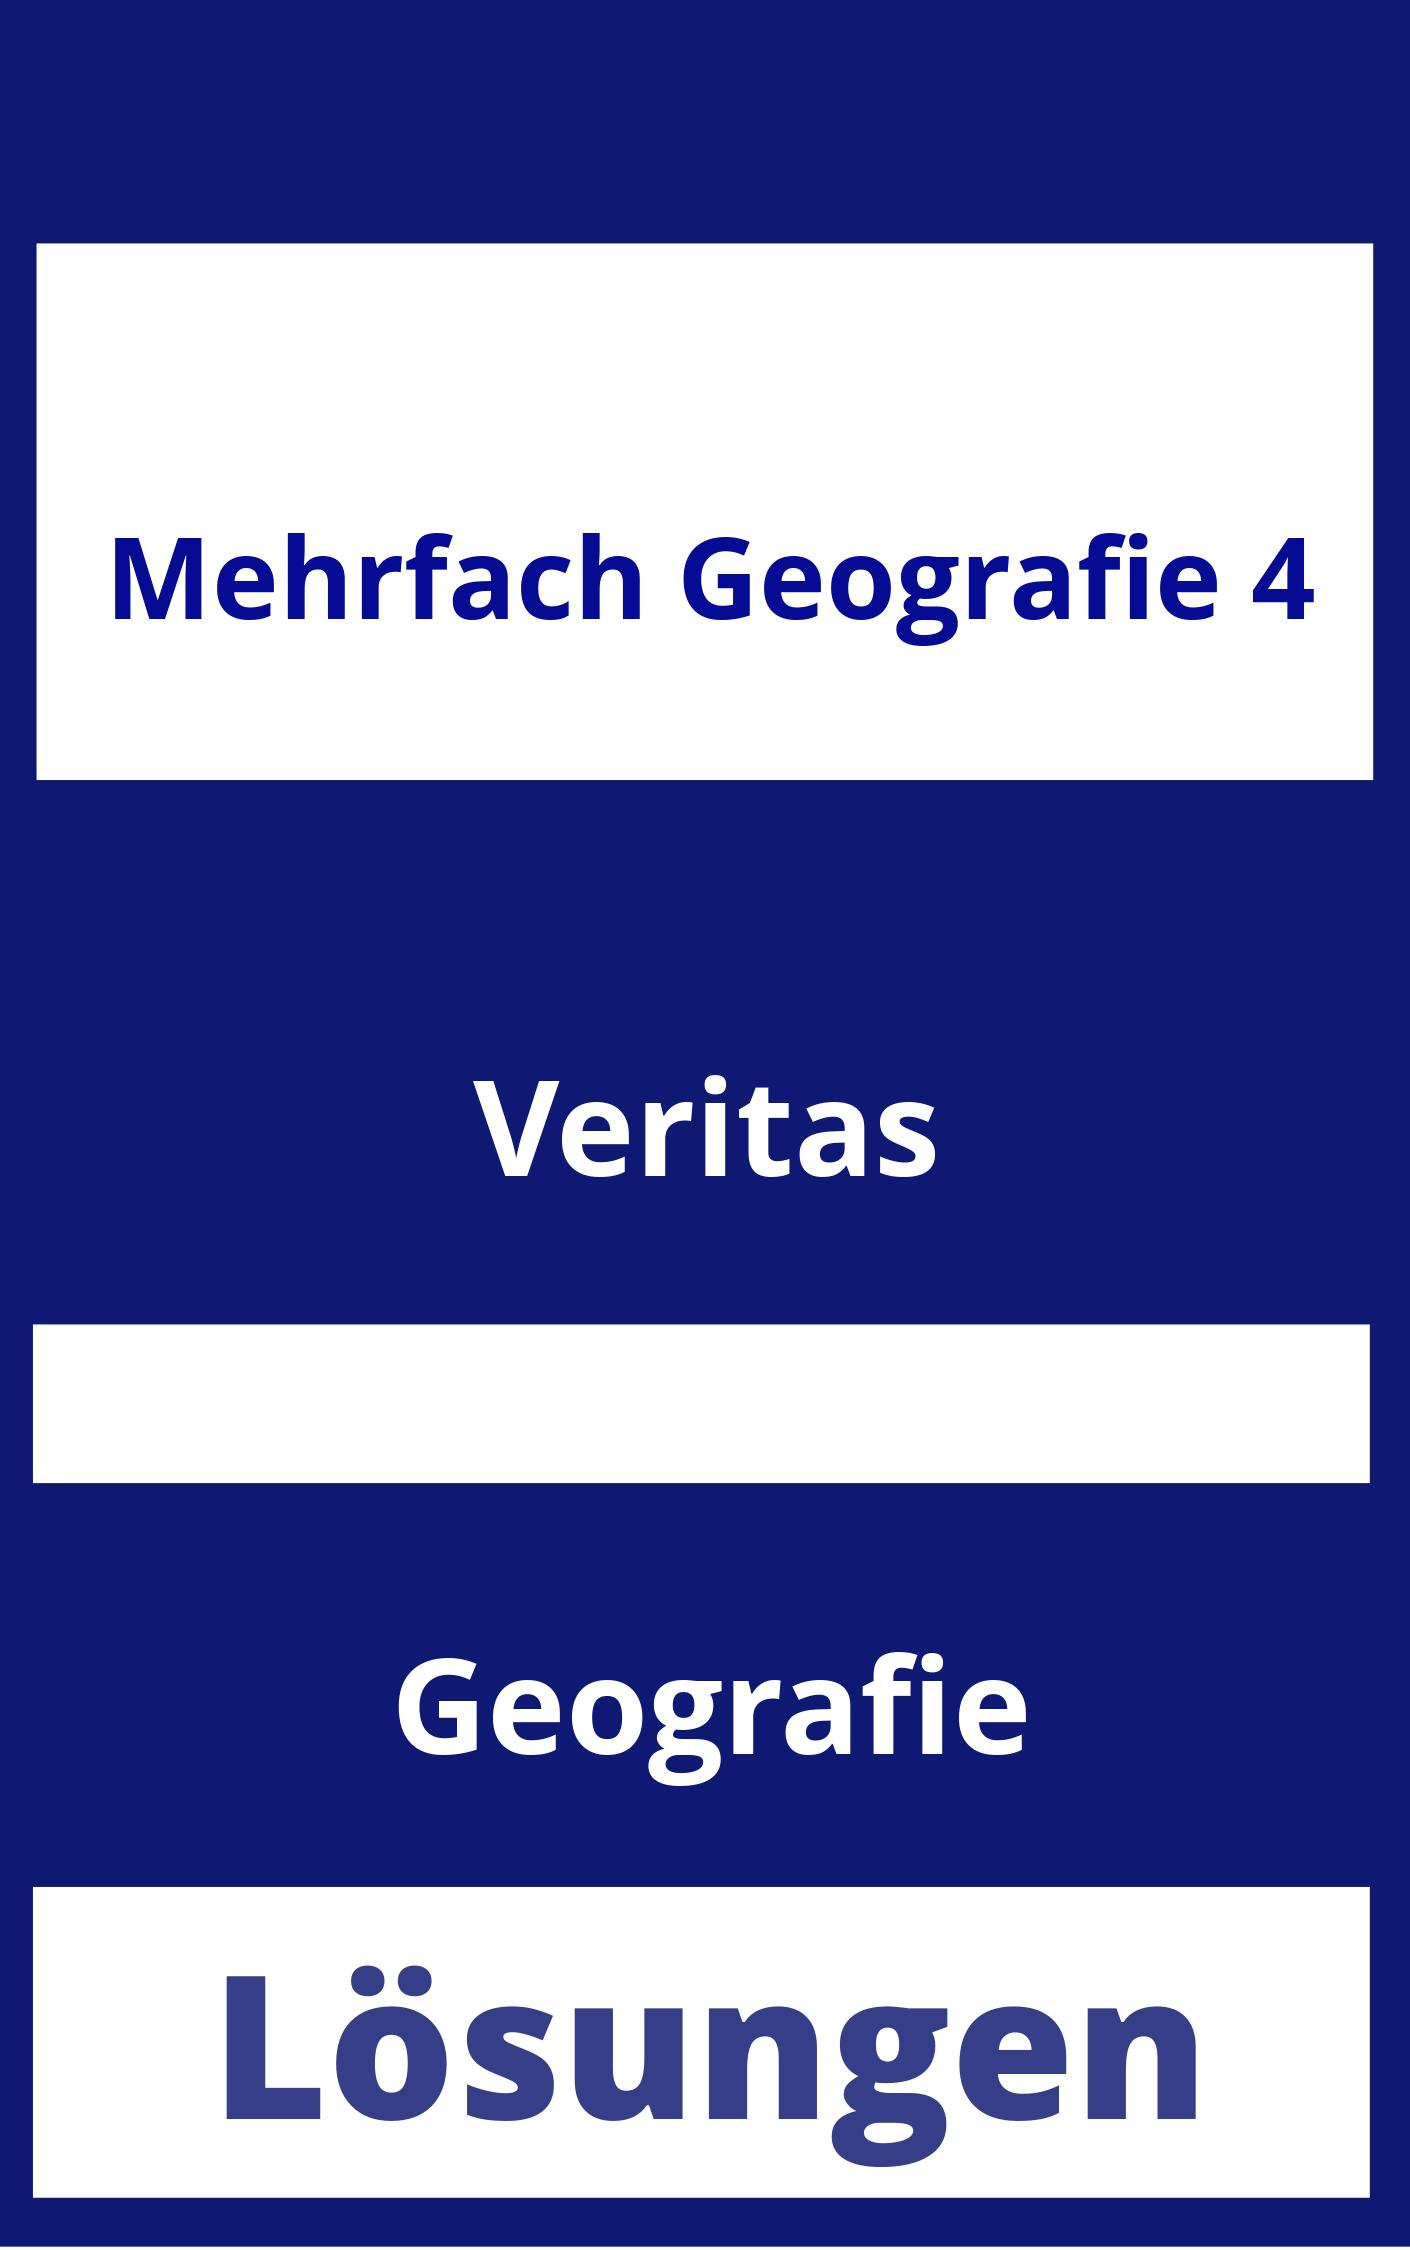 MEHRfach Geografie 4 Lösungen PDF